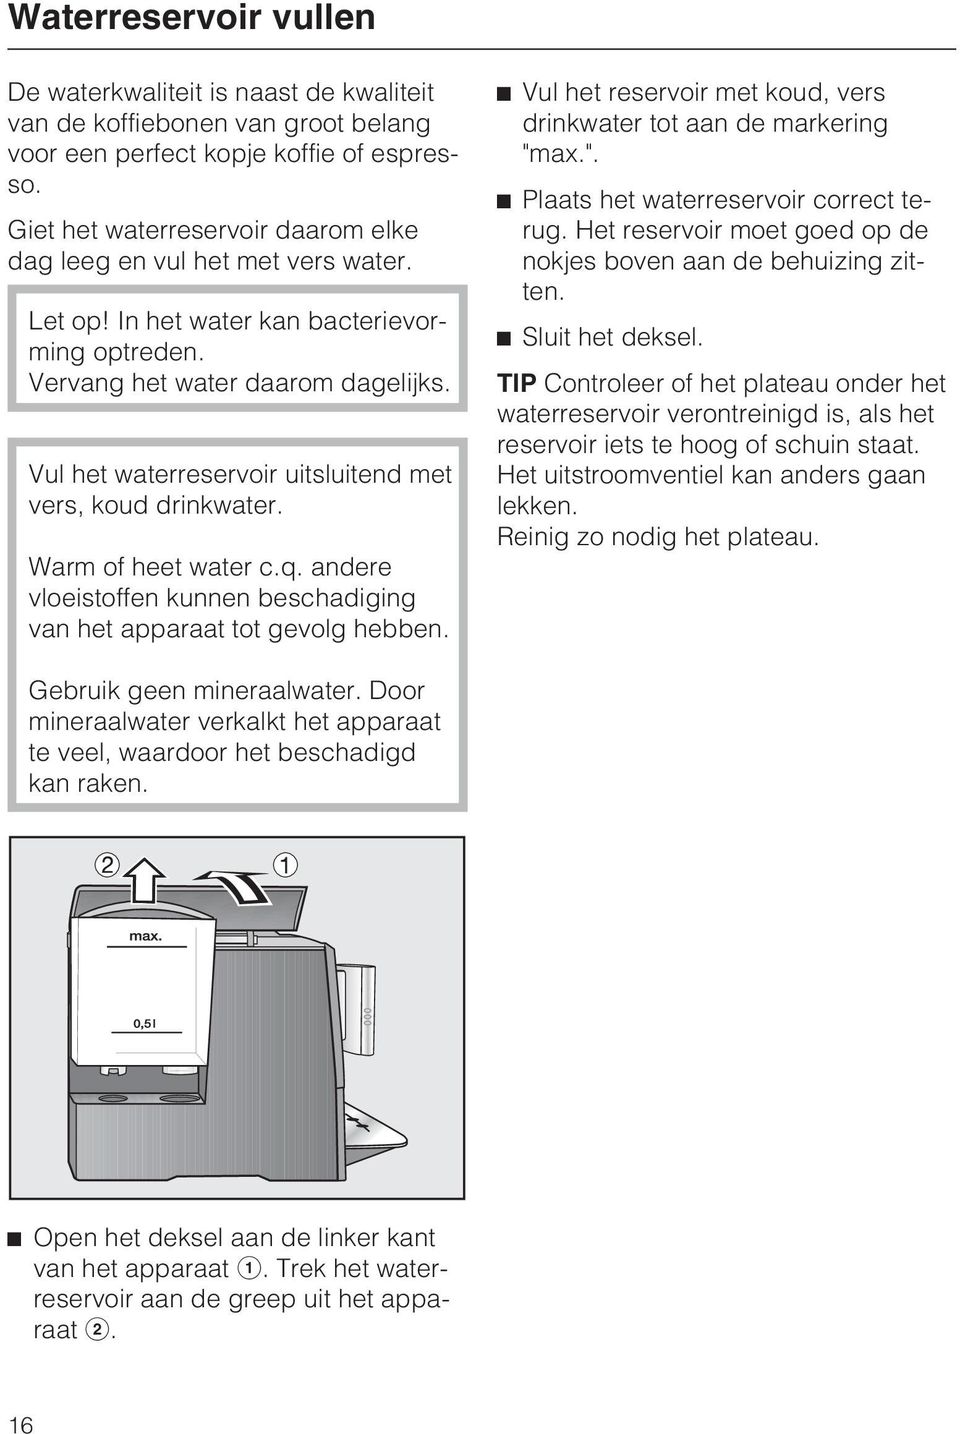 Vul het waterreservoir uitsluitend met vers, koud drinkwater. Warm of heet water c.q. andere vloeistoffen kunnen beschadiging van het apparaat tot gevolg hebben.